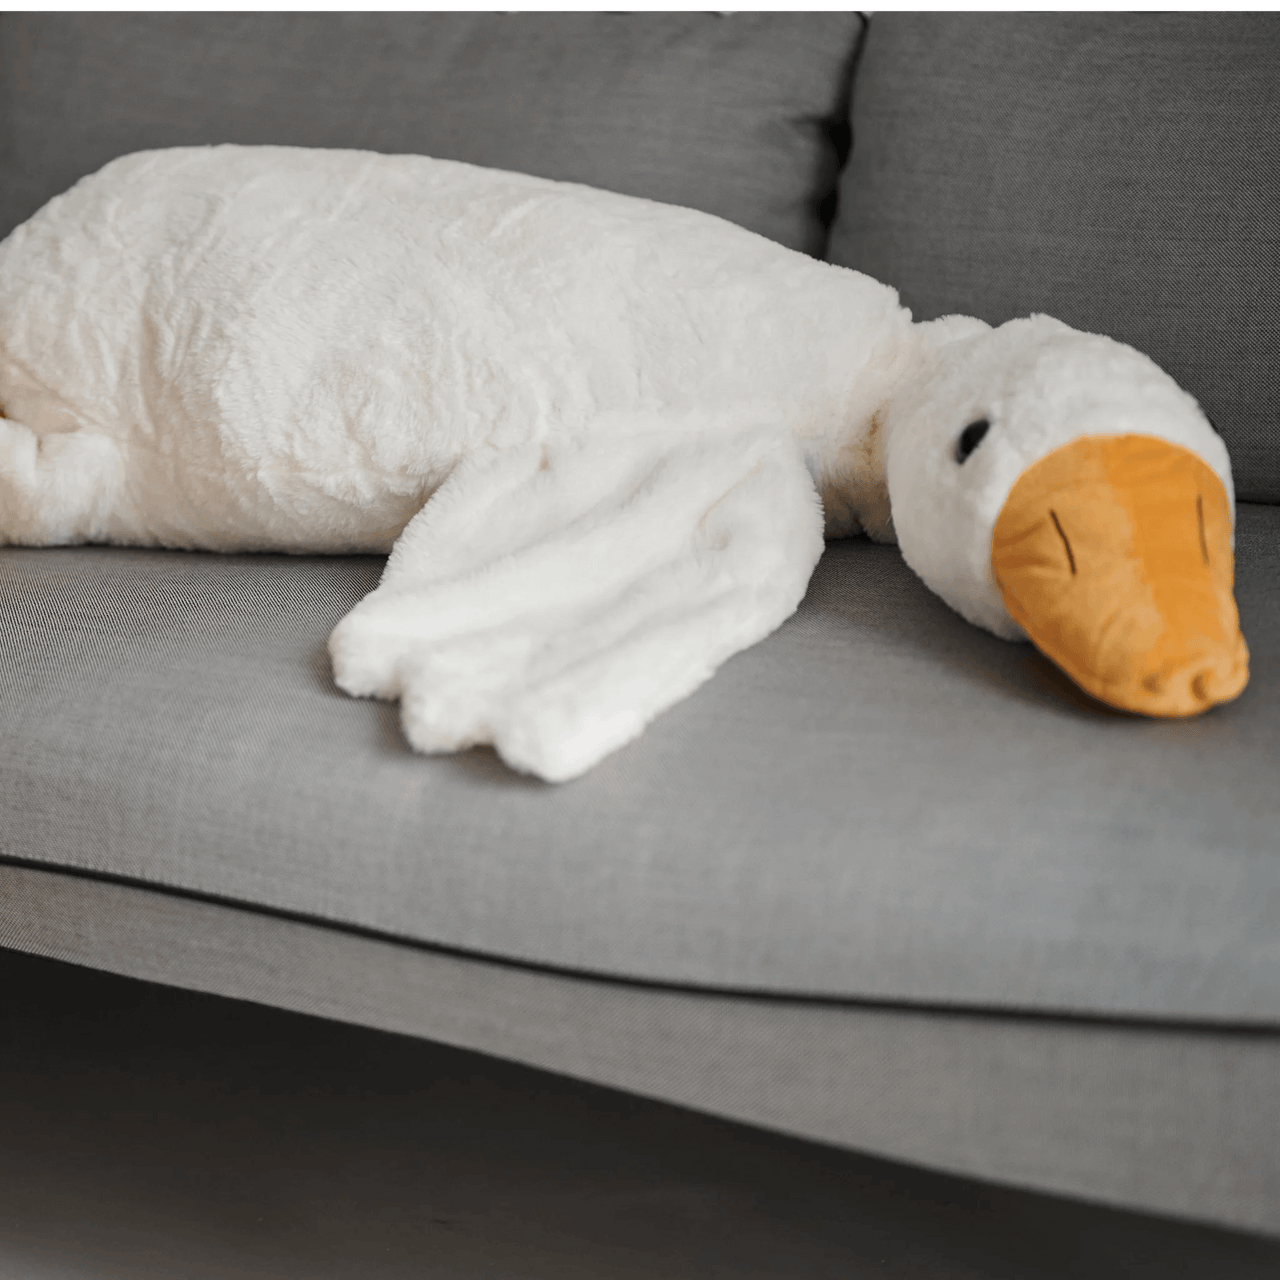 Devache Ursula The Giant Stuffed Animal Goose Curious Plush Pillow White